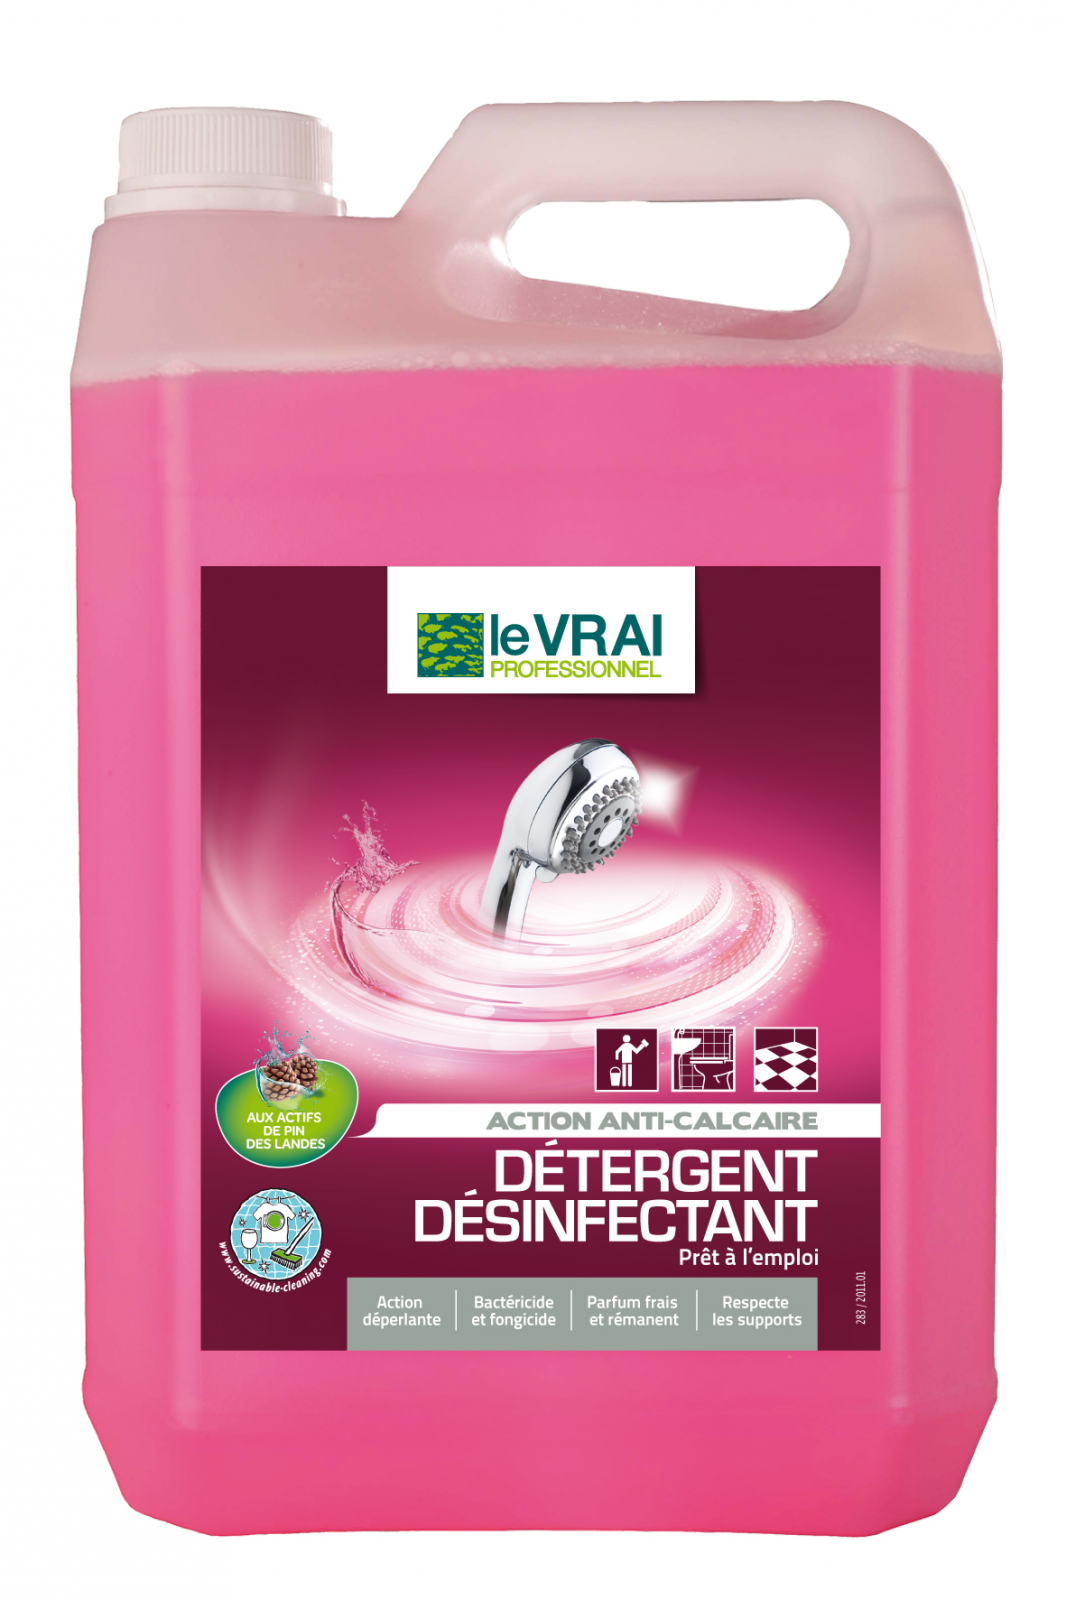 Detergent Desinfectant Sanitaire 5 En 1 - Le Vrai - 5 Litres